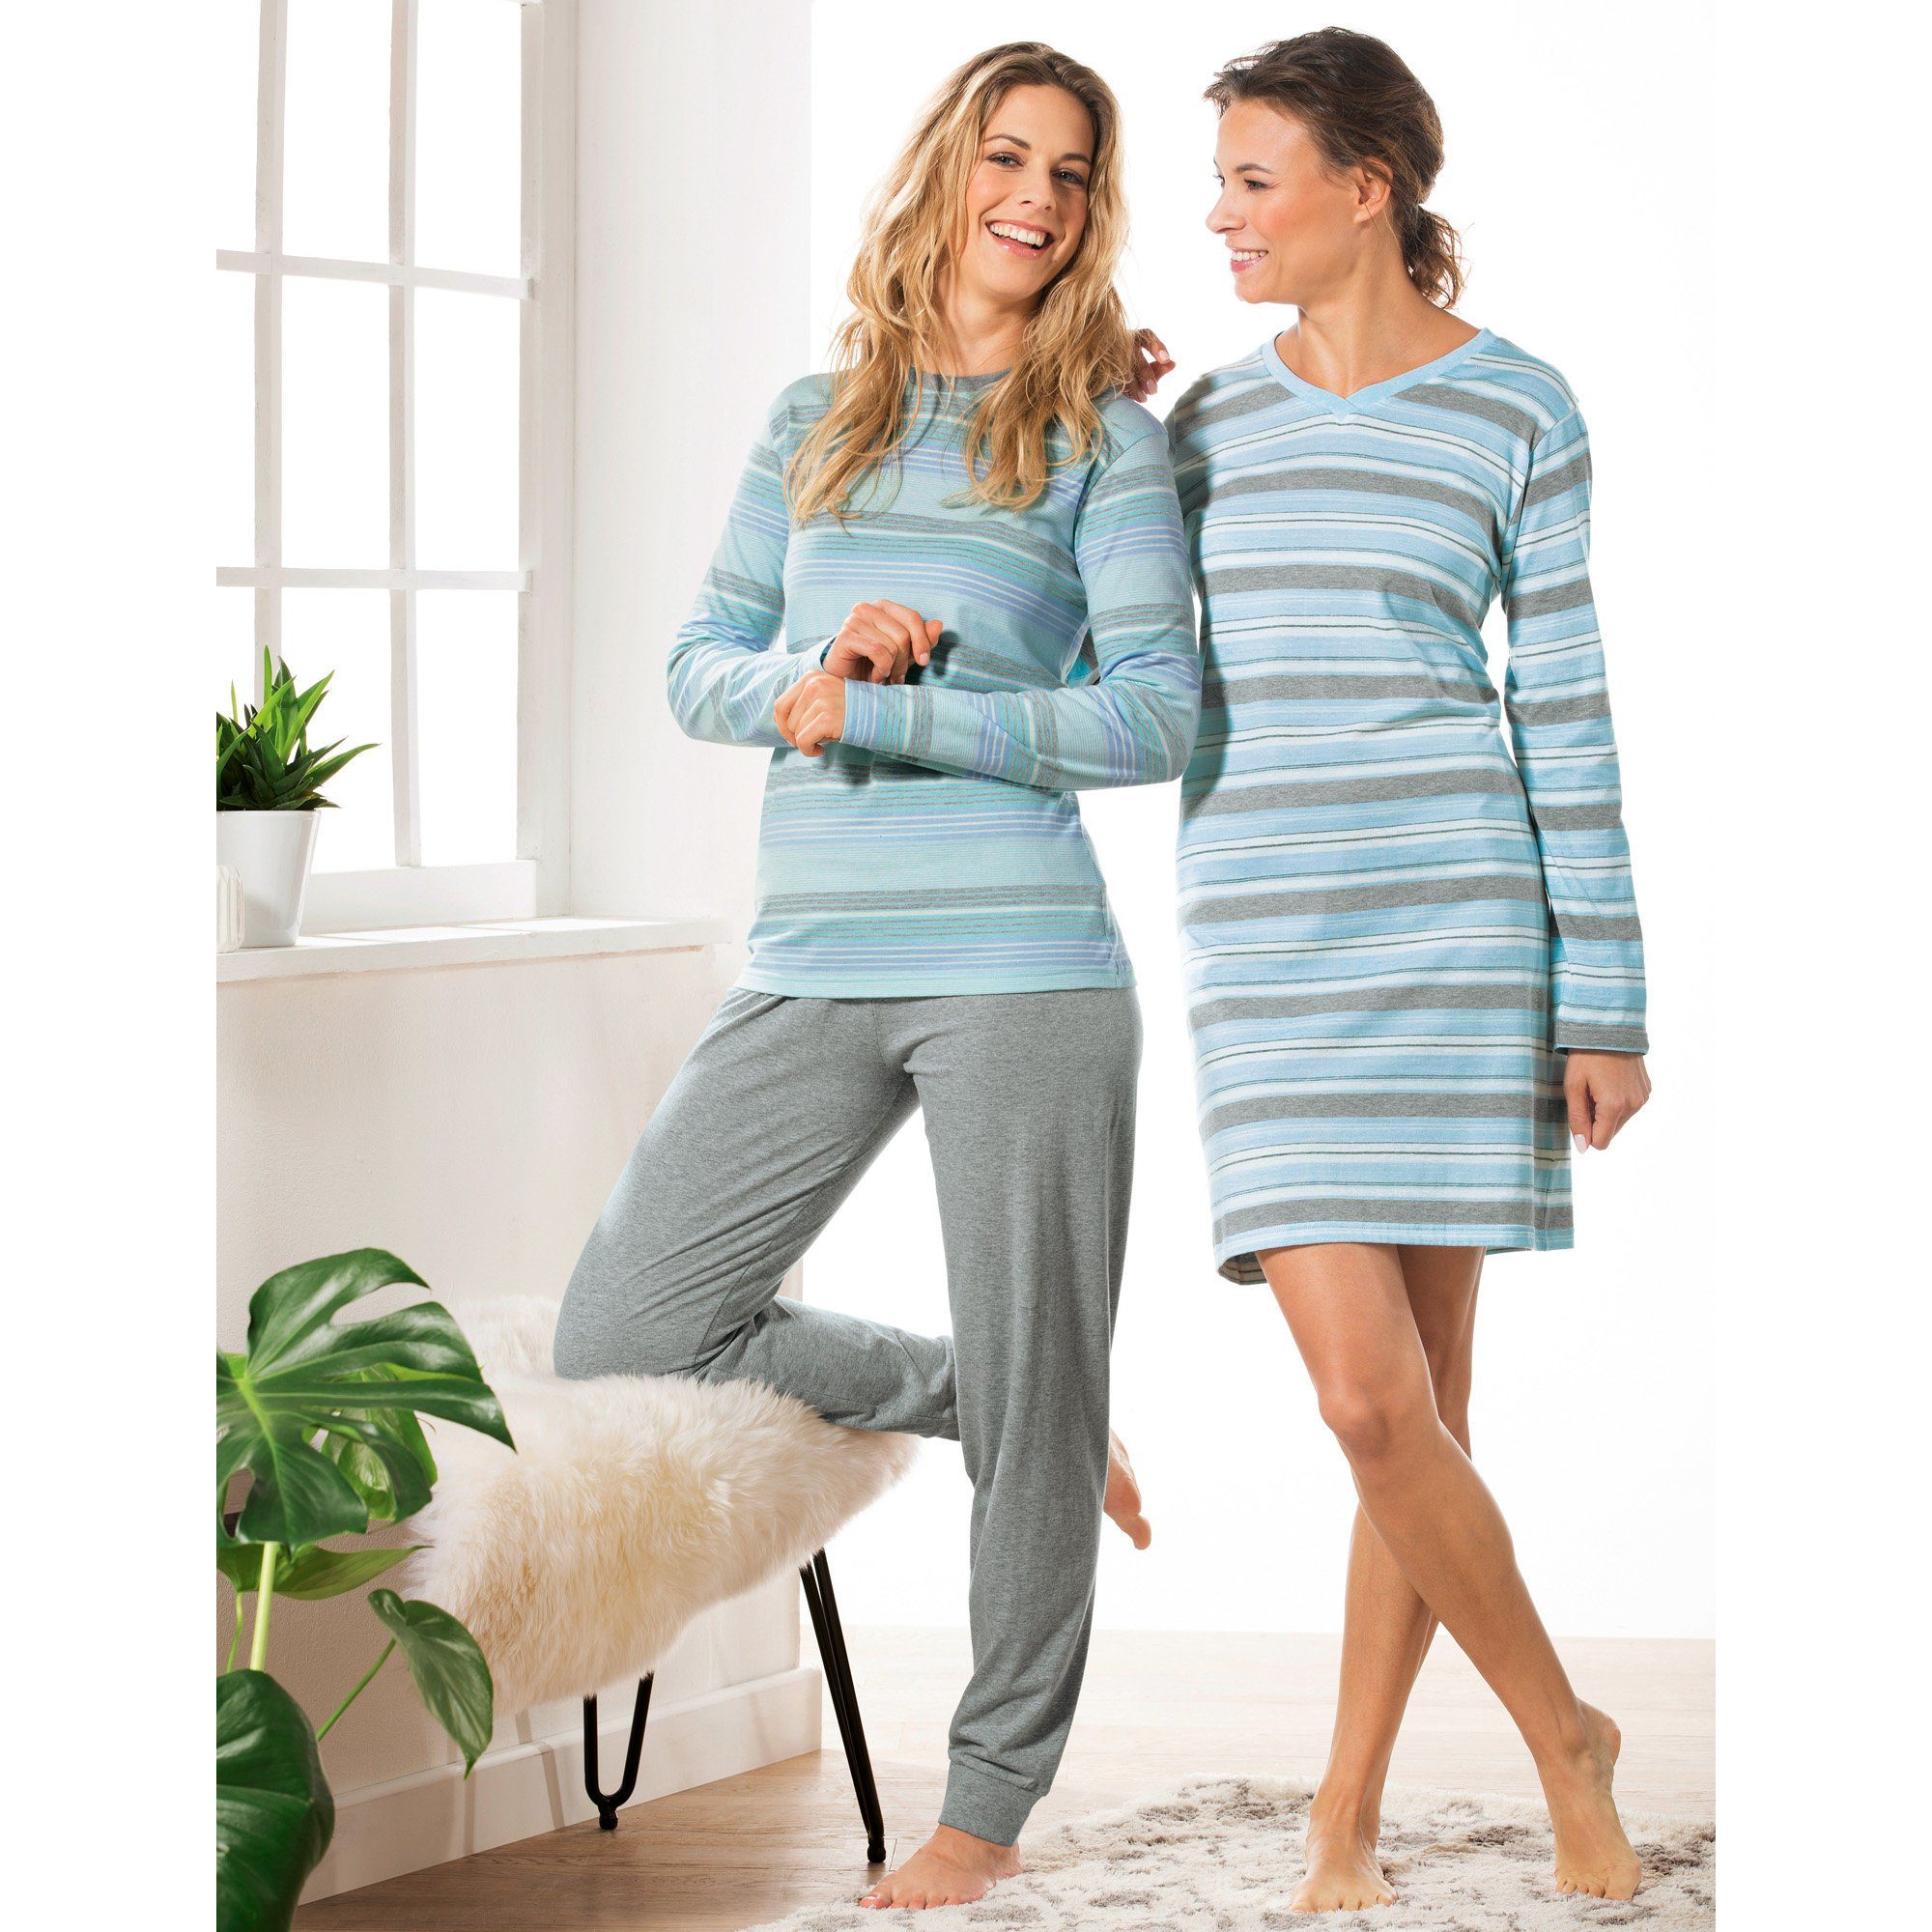 REDBEST Single-Jersey Damen-Schlafanzug Streifen Pyjama